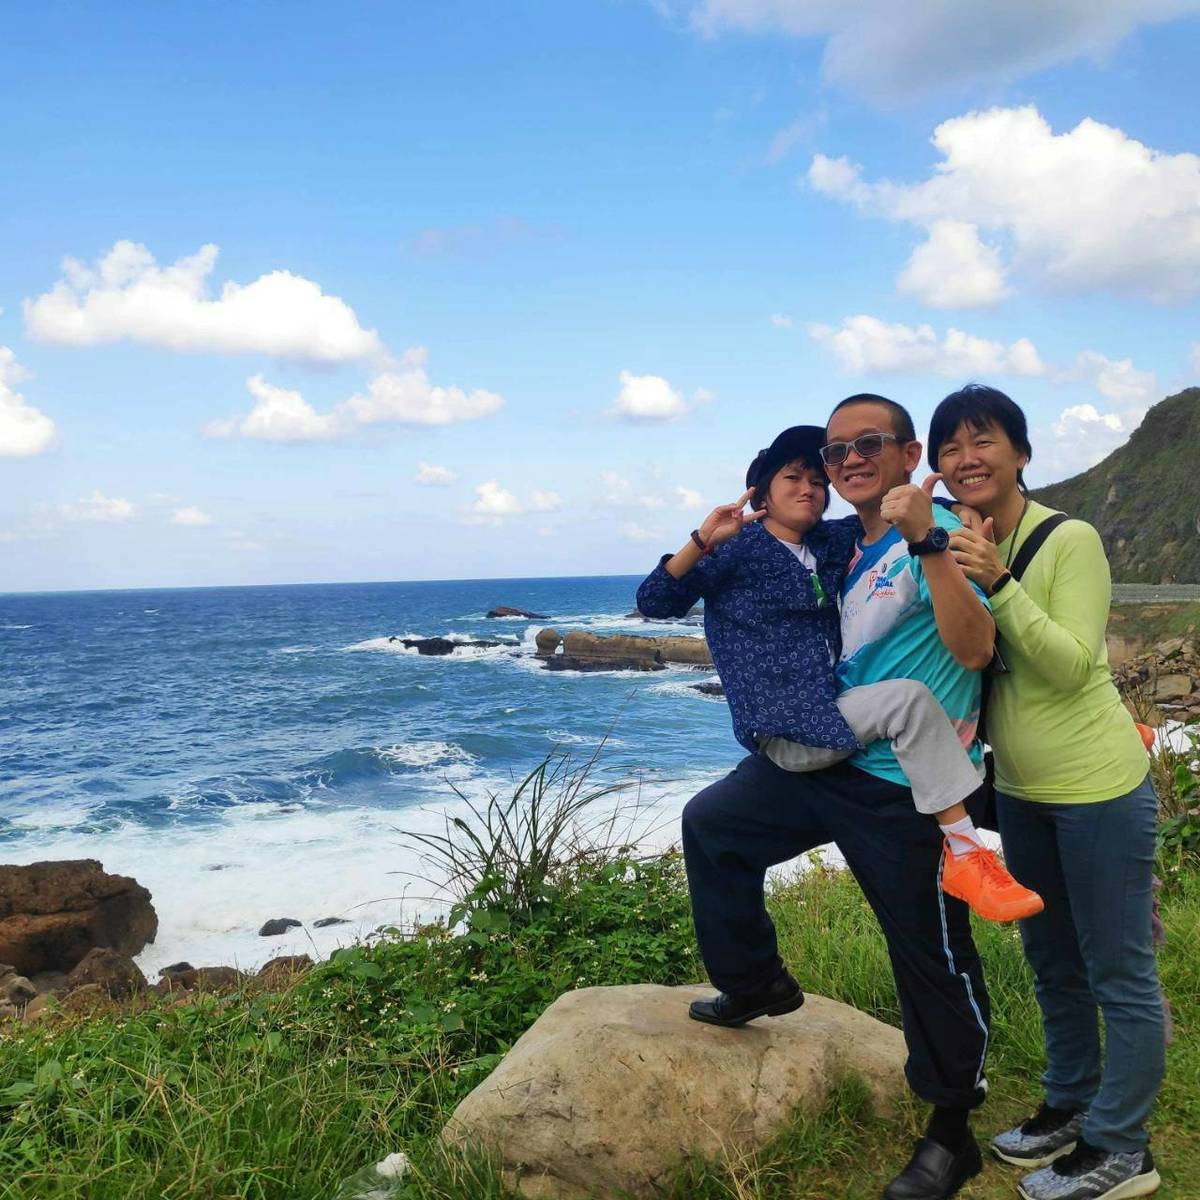 馬來西亞溶小體儲積症協會理事長陳意盛(中)與  妻子謝建芬(右)、小女兒李瑋玲(左)
